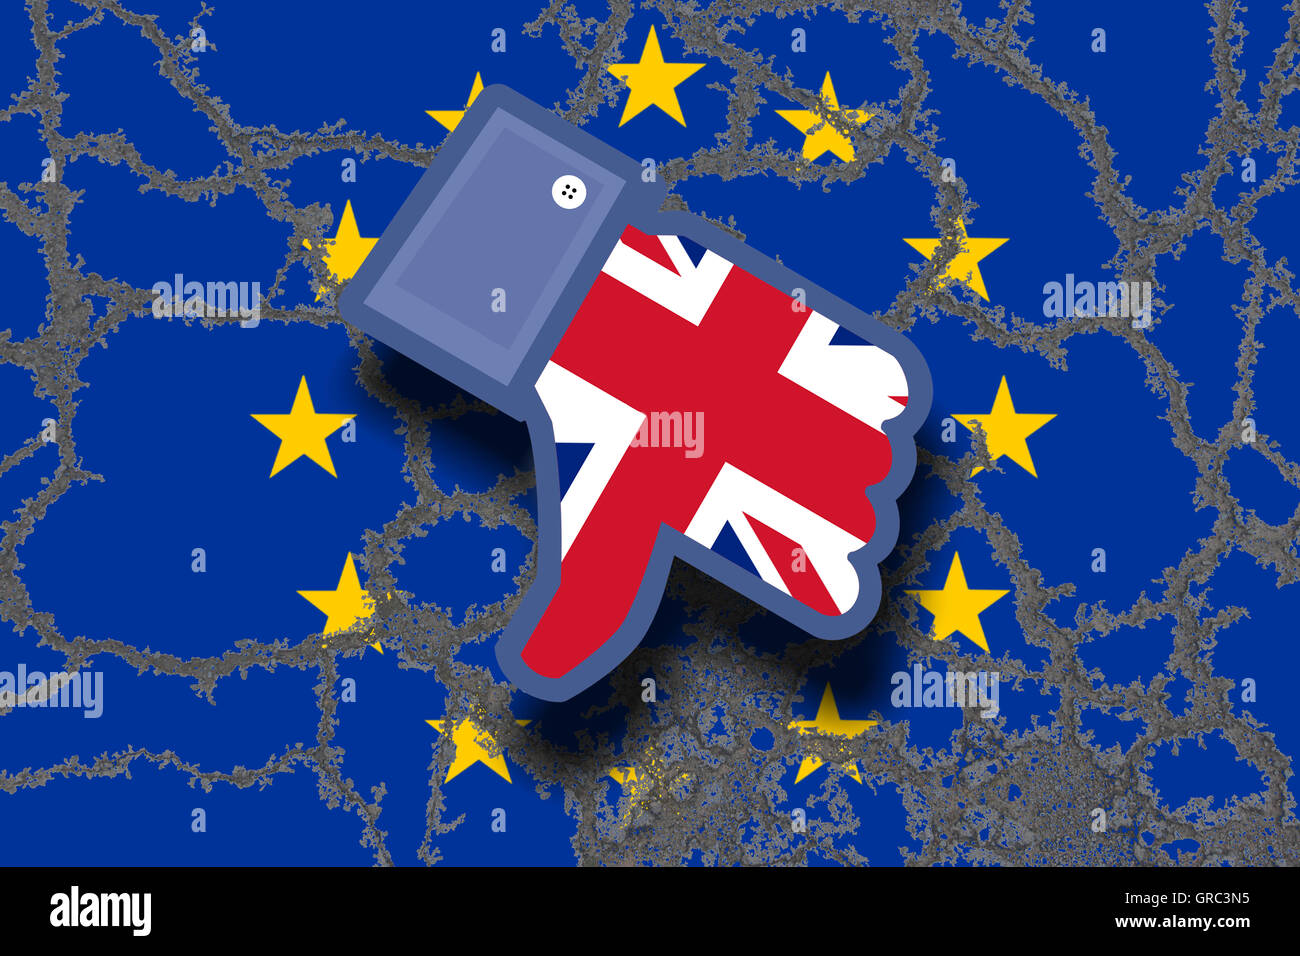 Facebook non piacciono Icona con Union Jack sulla bandiera della Ue che simboleggia la Gran Bretagna S Uscita della UE Unione europea con le bandiere della Ue e Gb Foto Stock